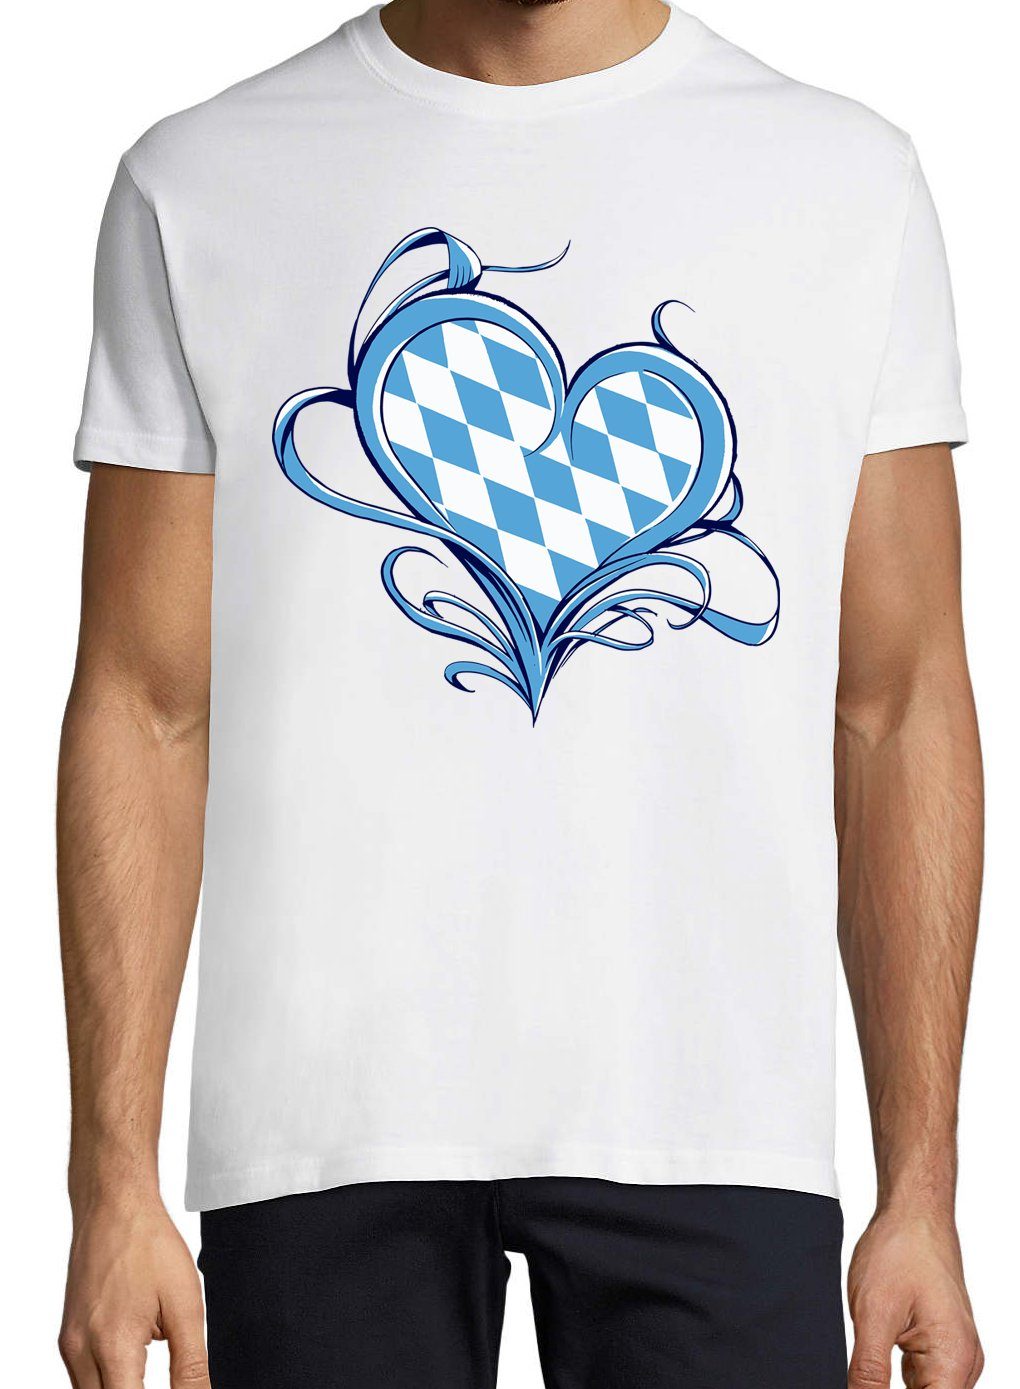 Bayern Weiß Shirt Liebe trendigem Youth Frontprint Love T-Shirt Herren mit Designz